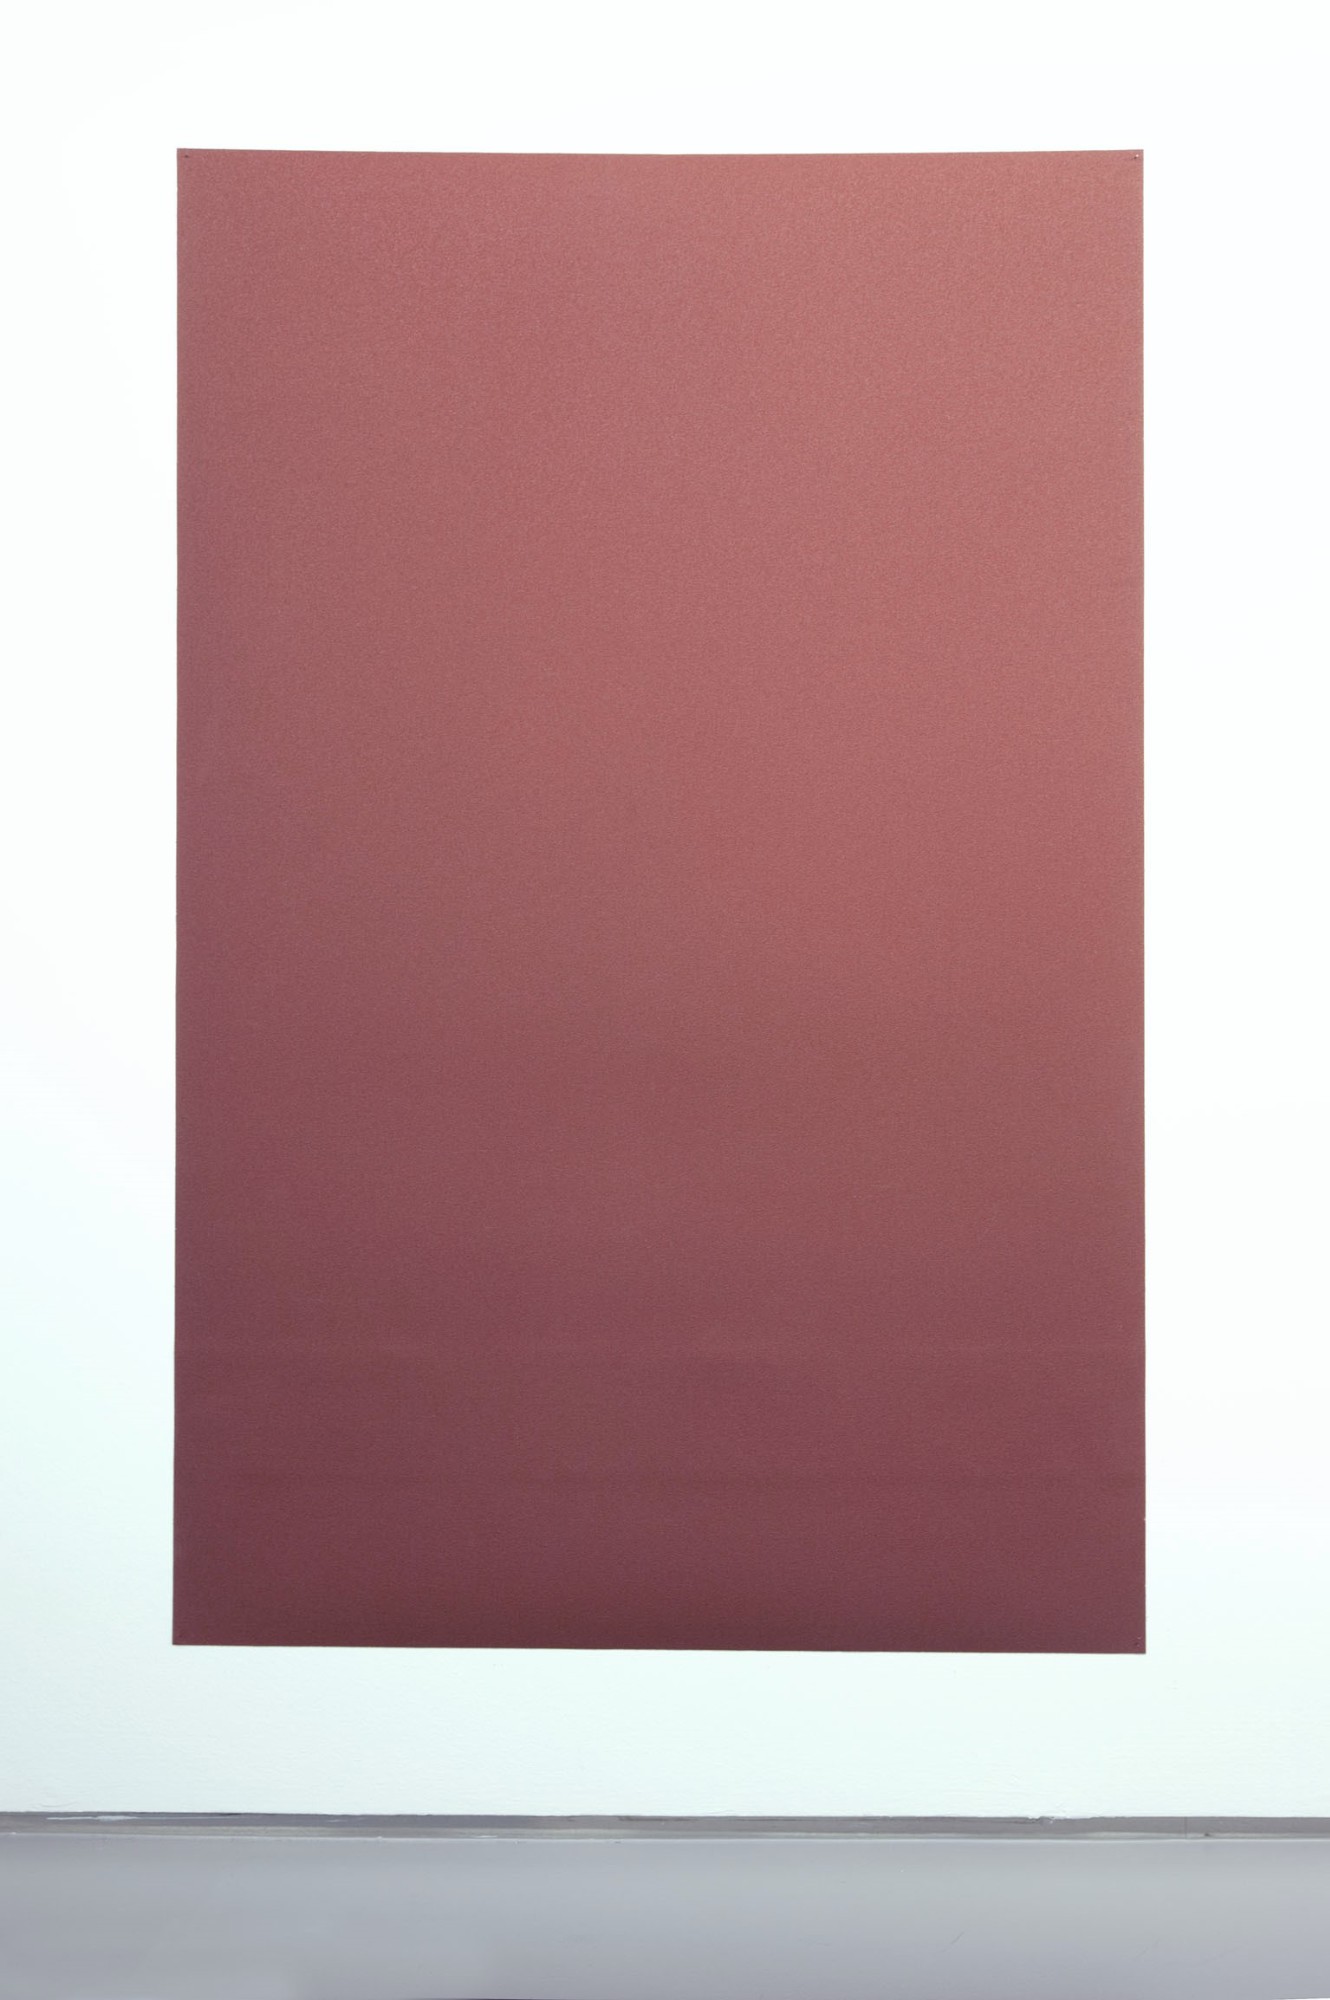 Tobias Hantmann, Pistill der Iris, rotbraun, mittelgrob, 2011, sandpaper, 221,5 x 142 cm